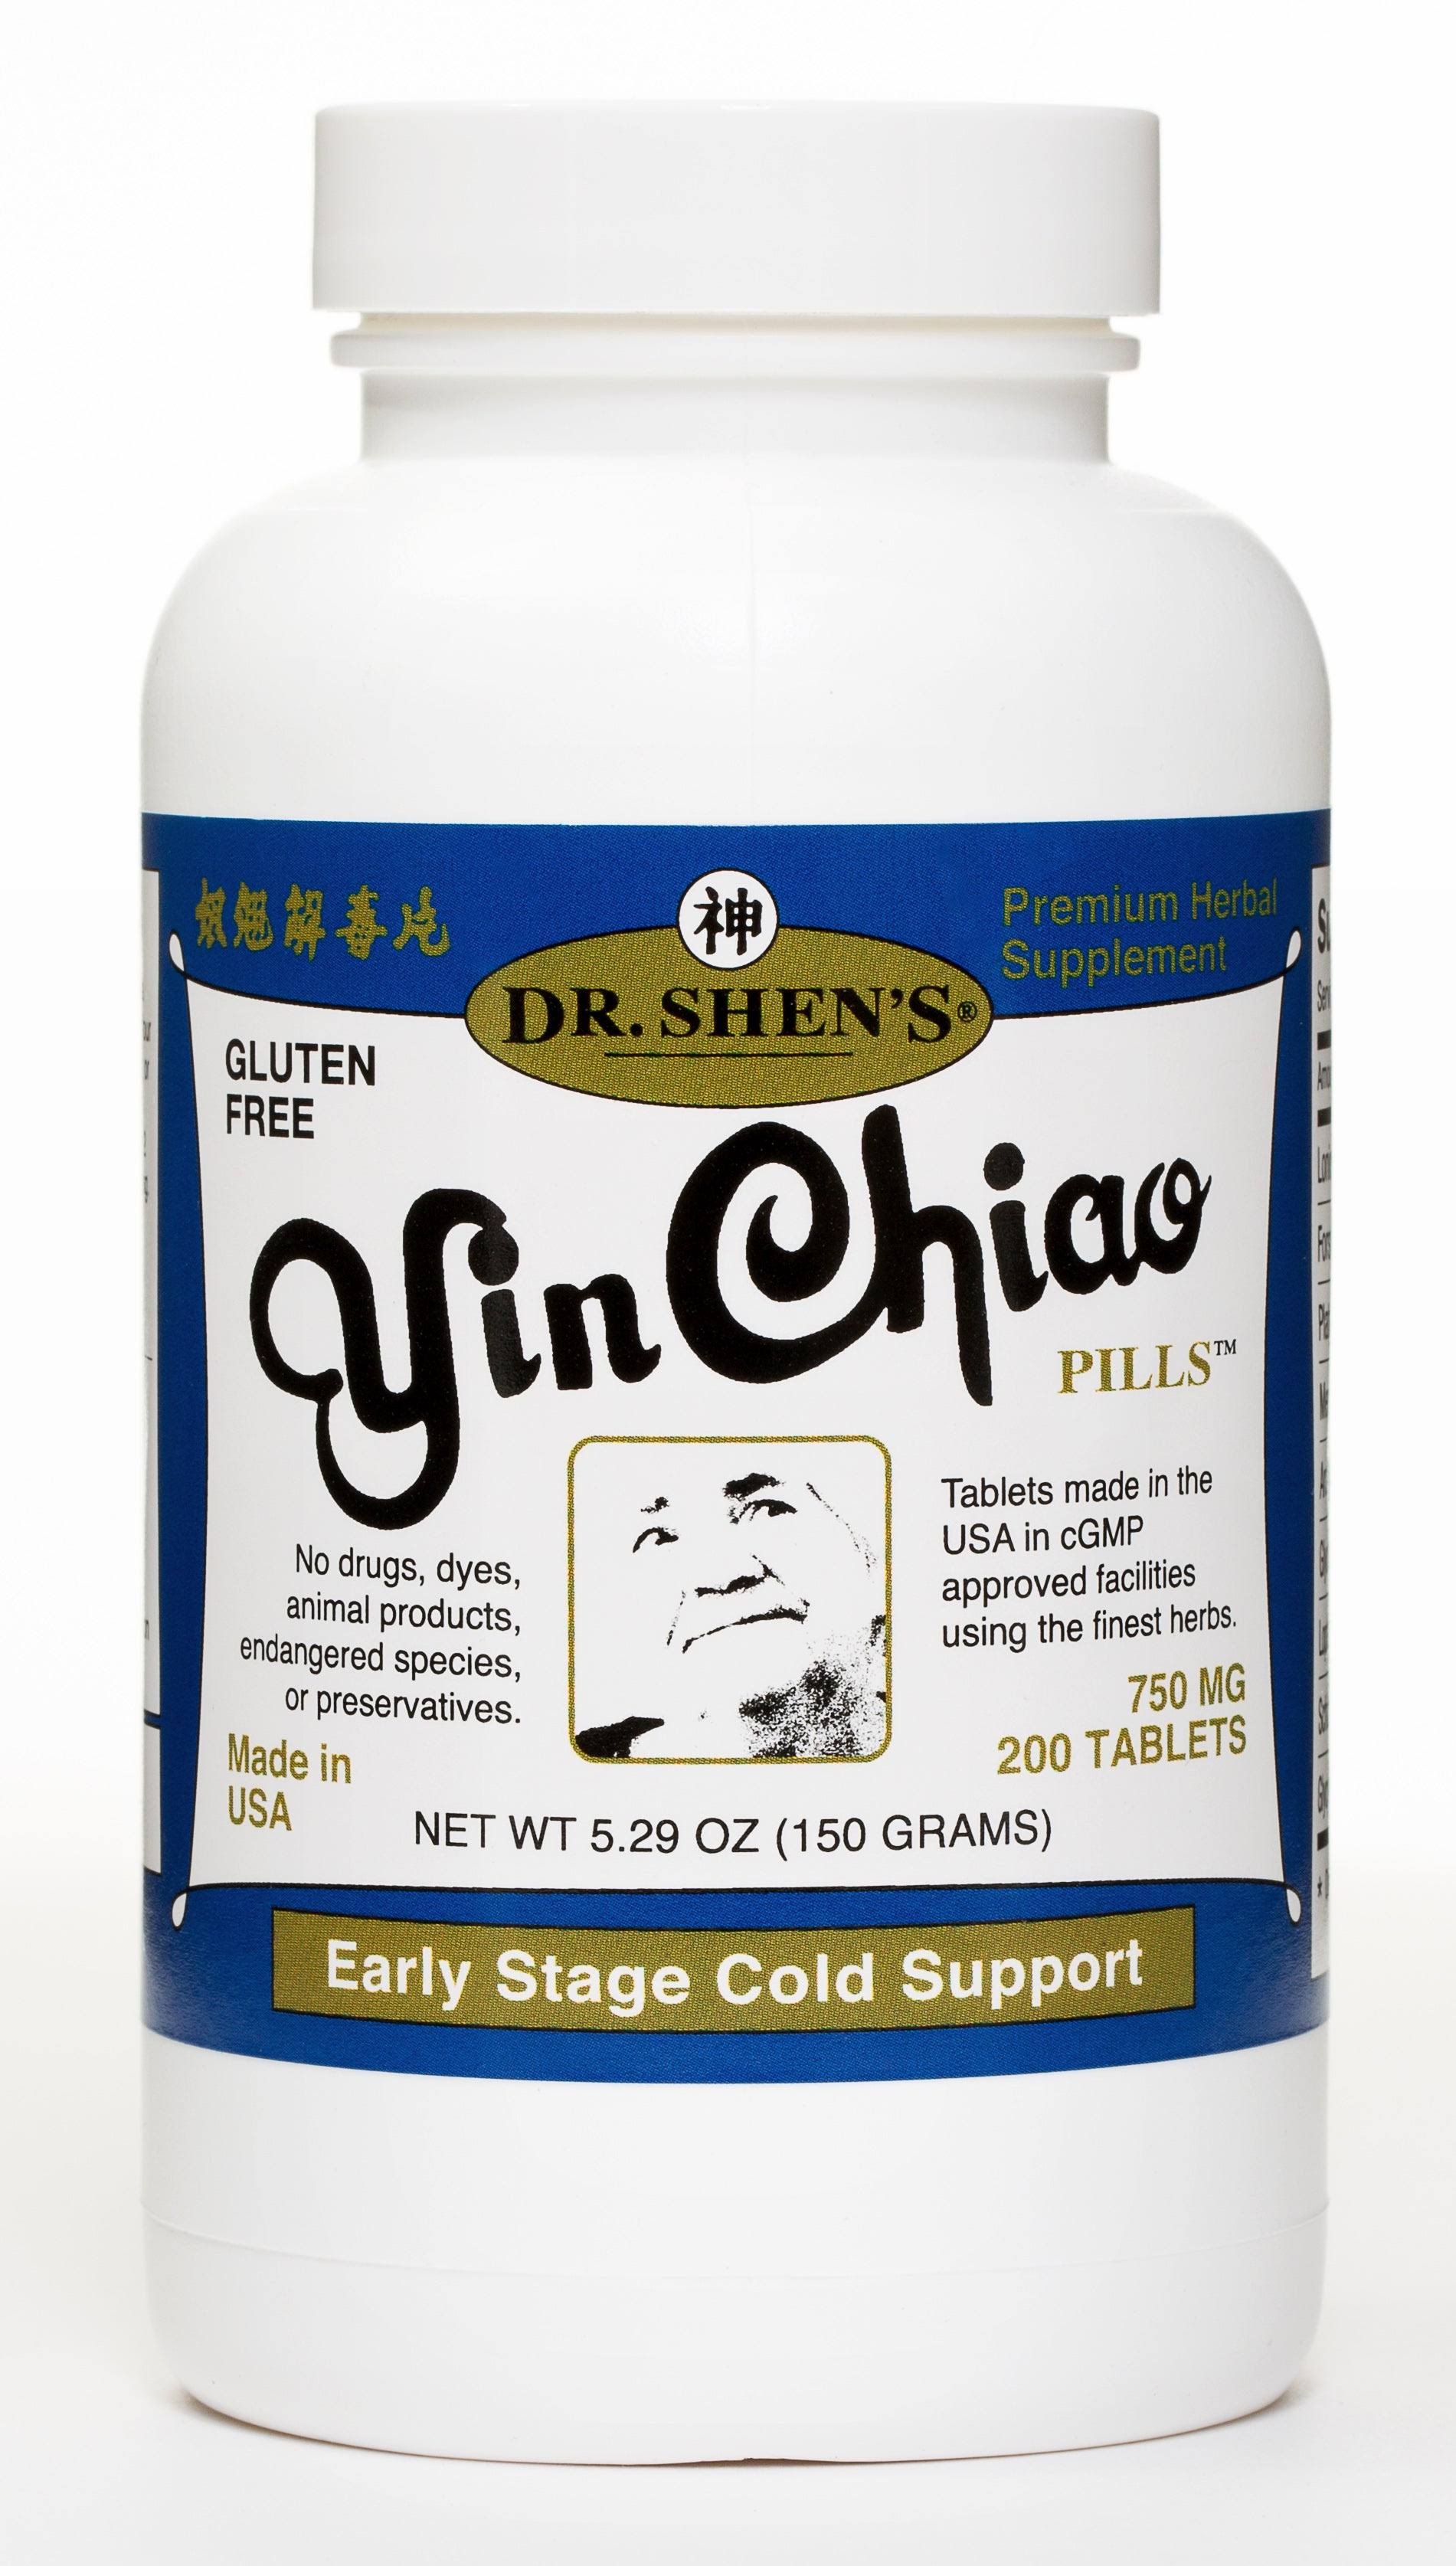 Dr. Shen's Yin Chiao Pills 750mg Tablets - x200